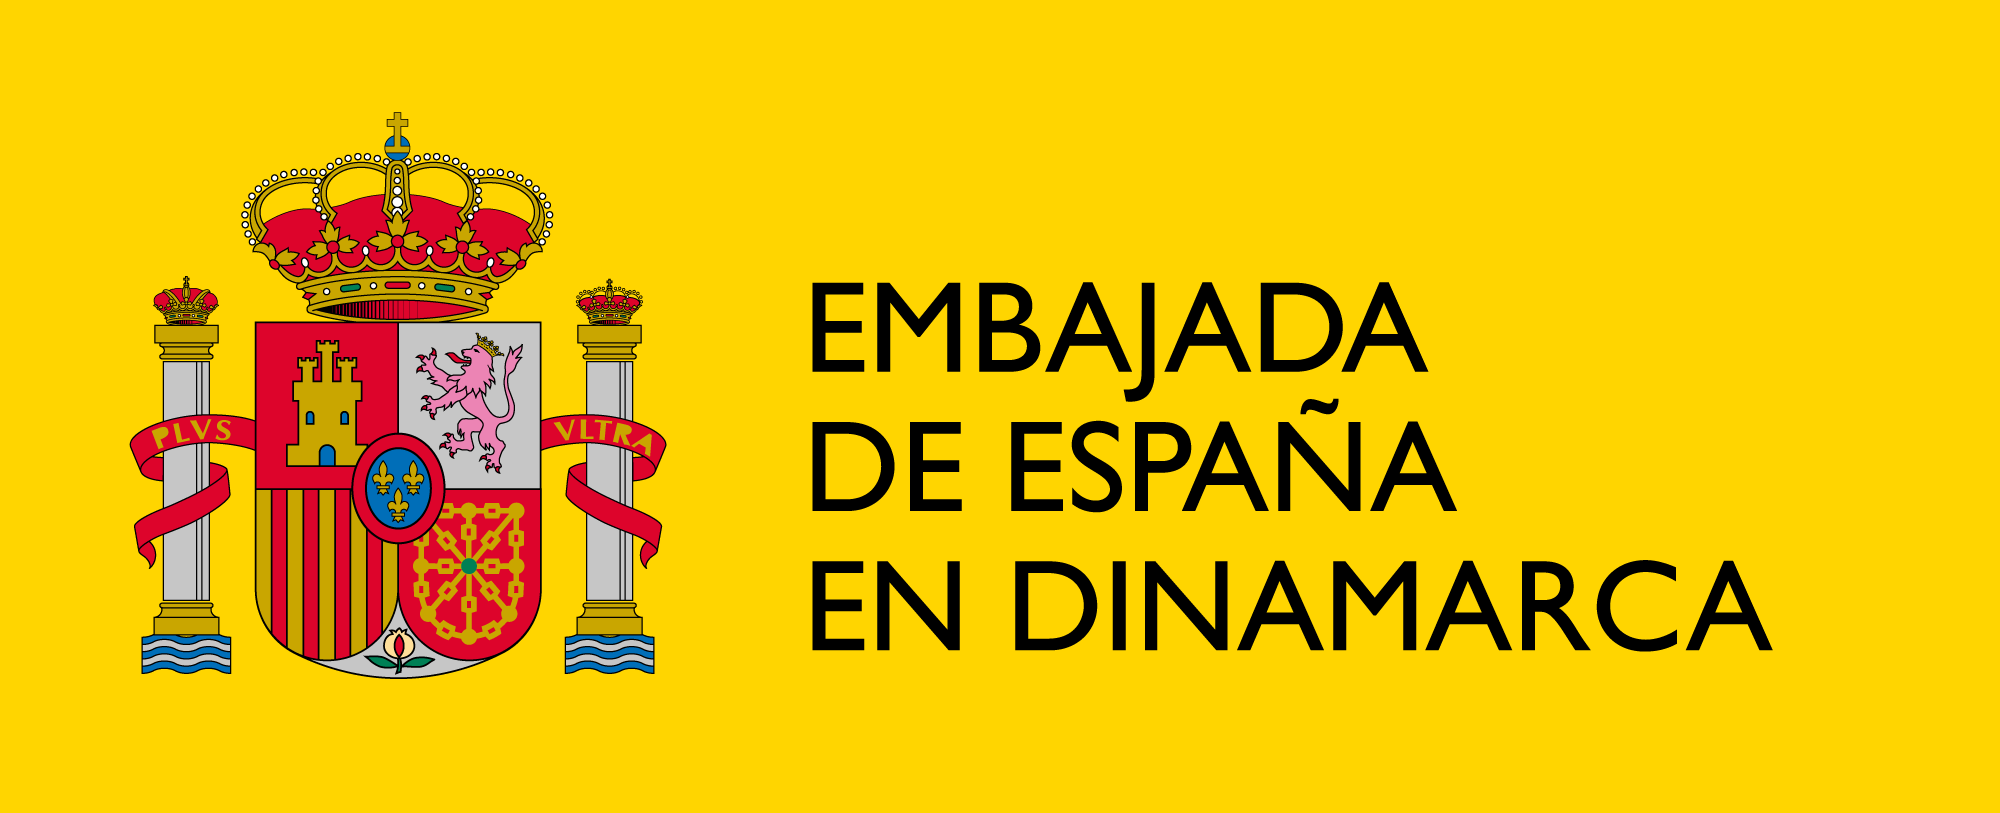 Den Spanske Ambassade, Københavns logo med sort tekst på gul baggrund 